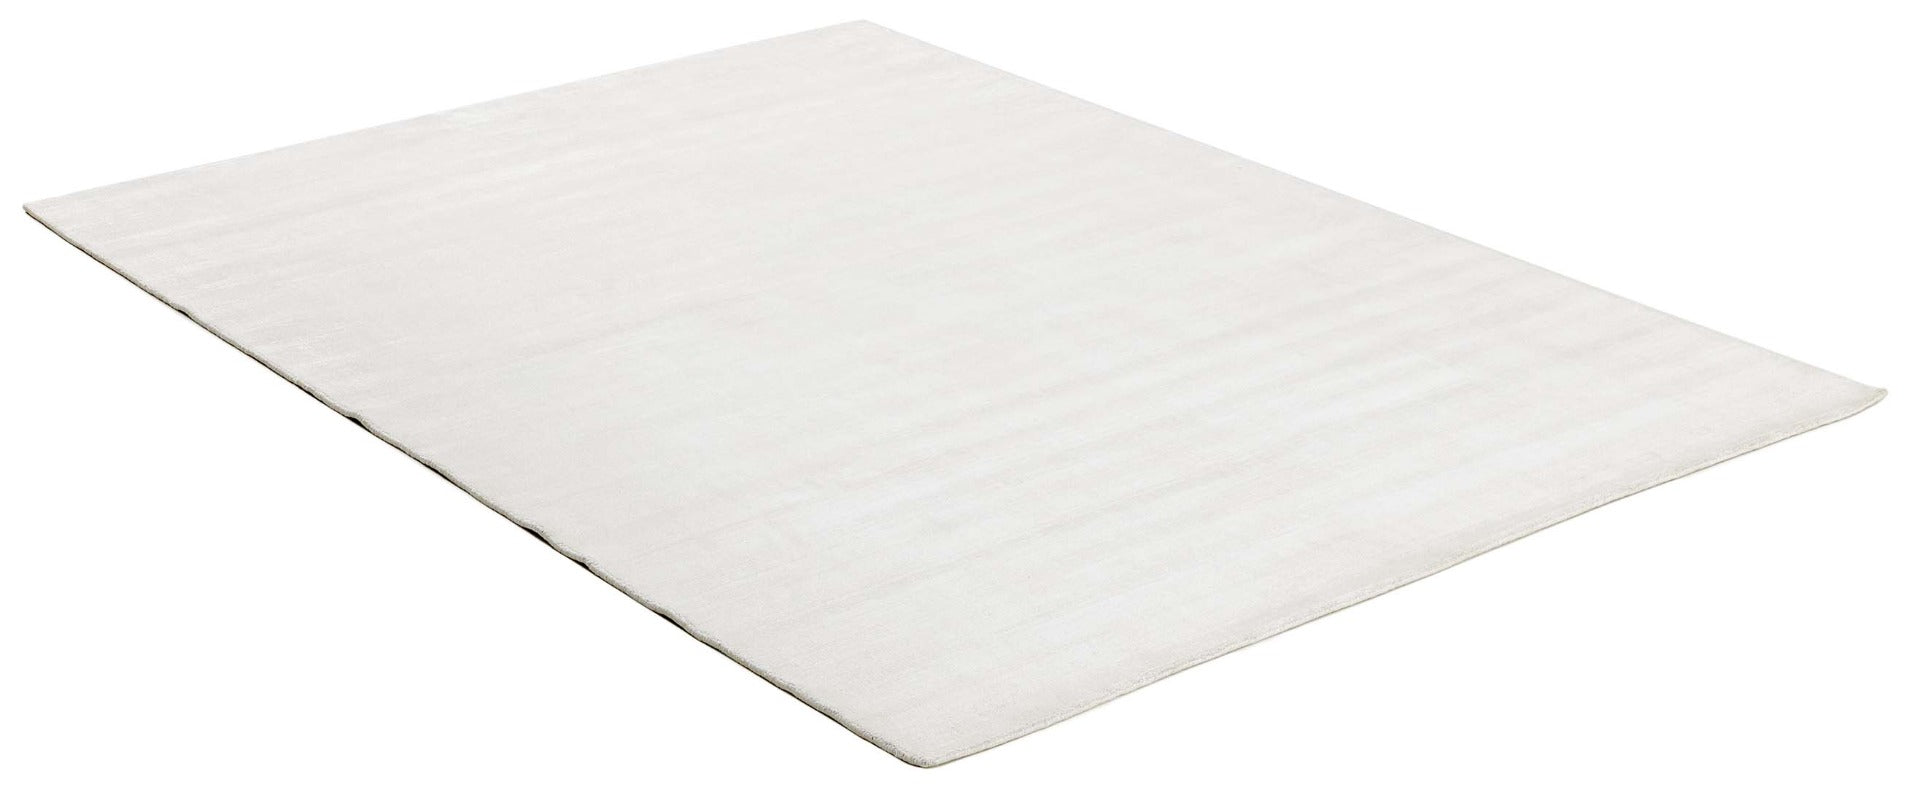 plain white viscose rug
